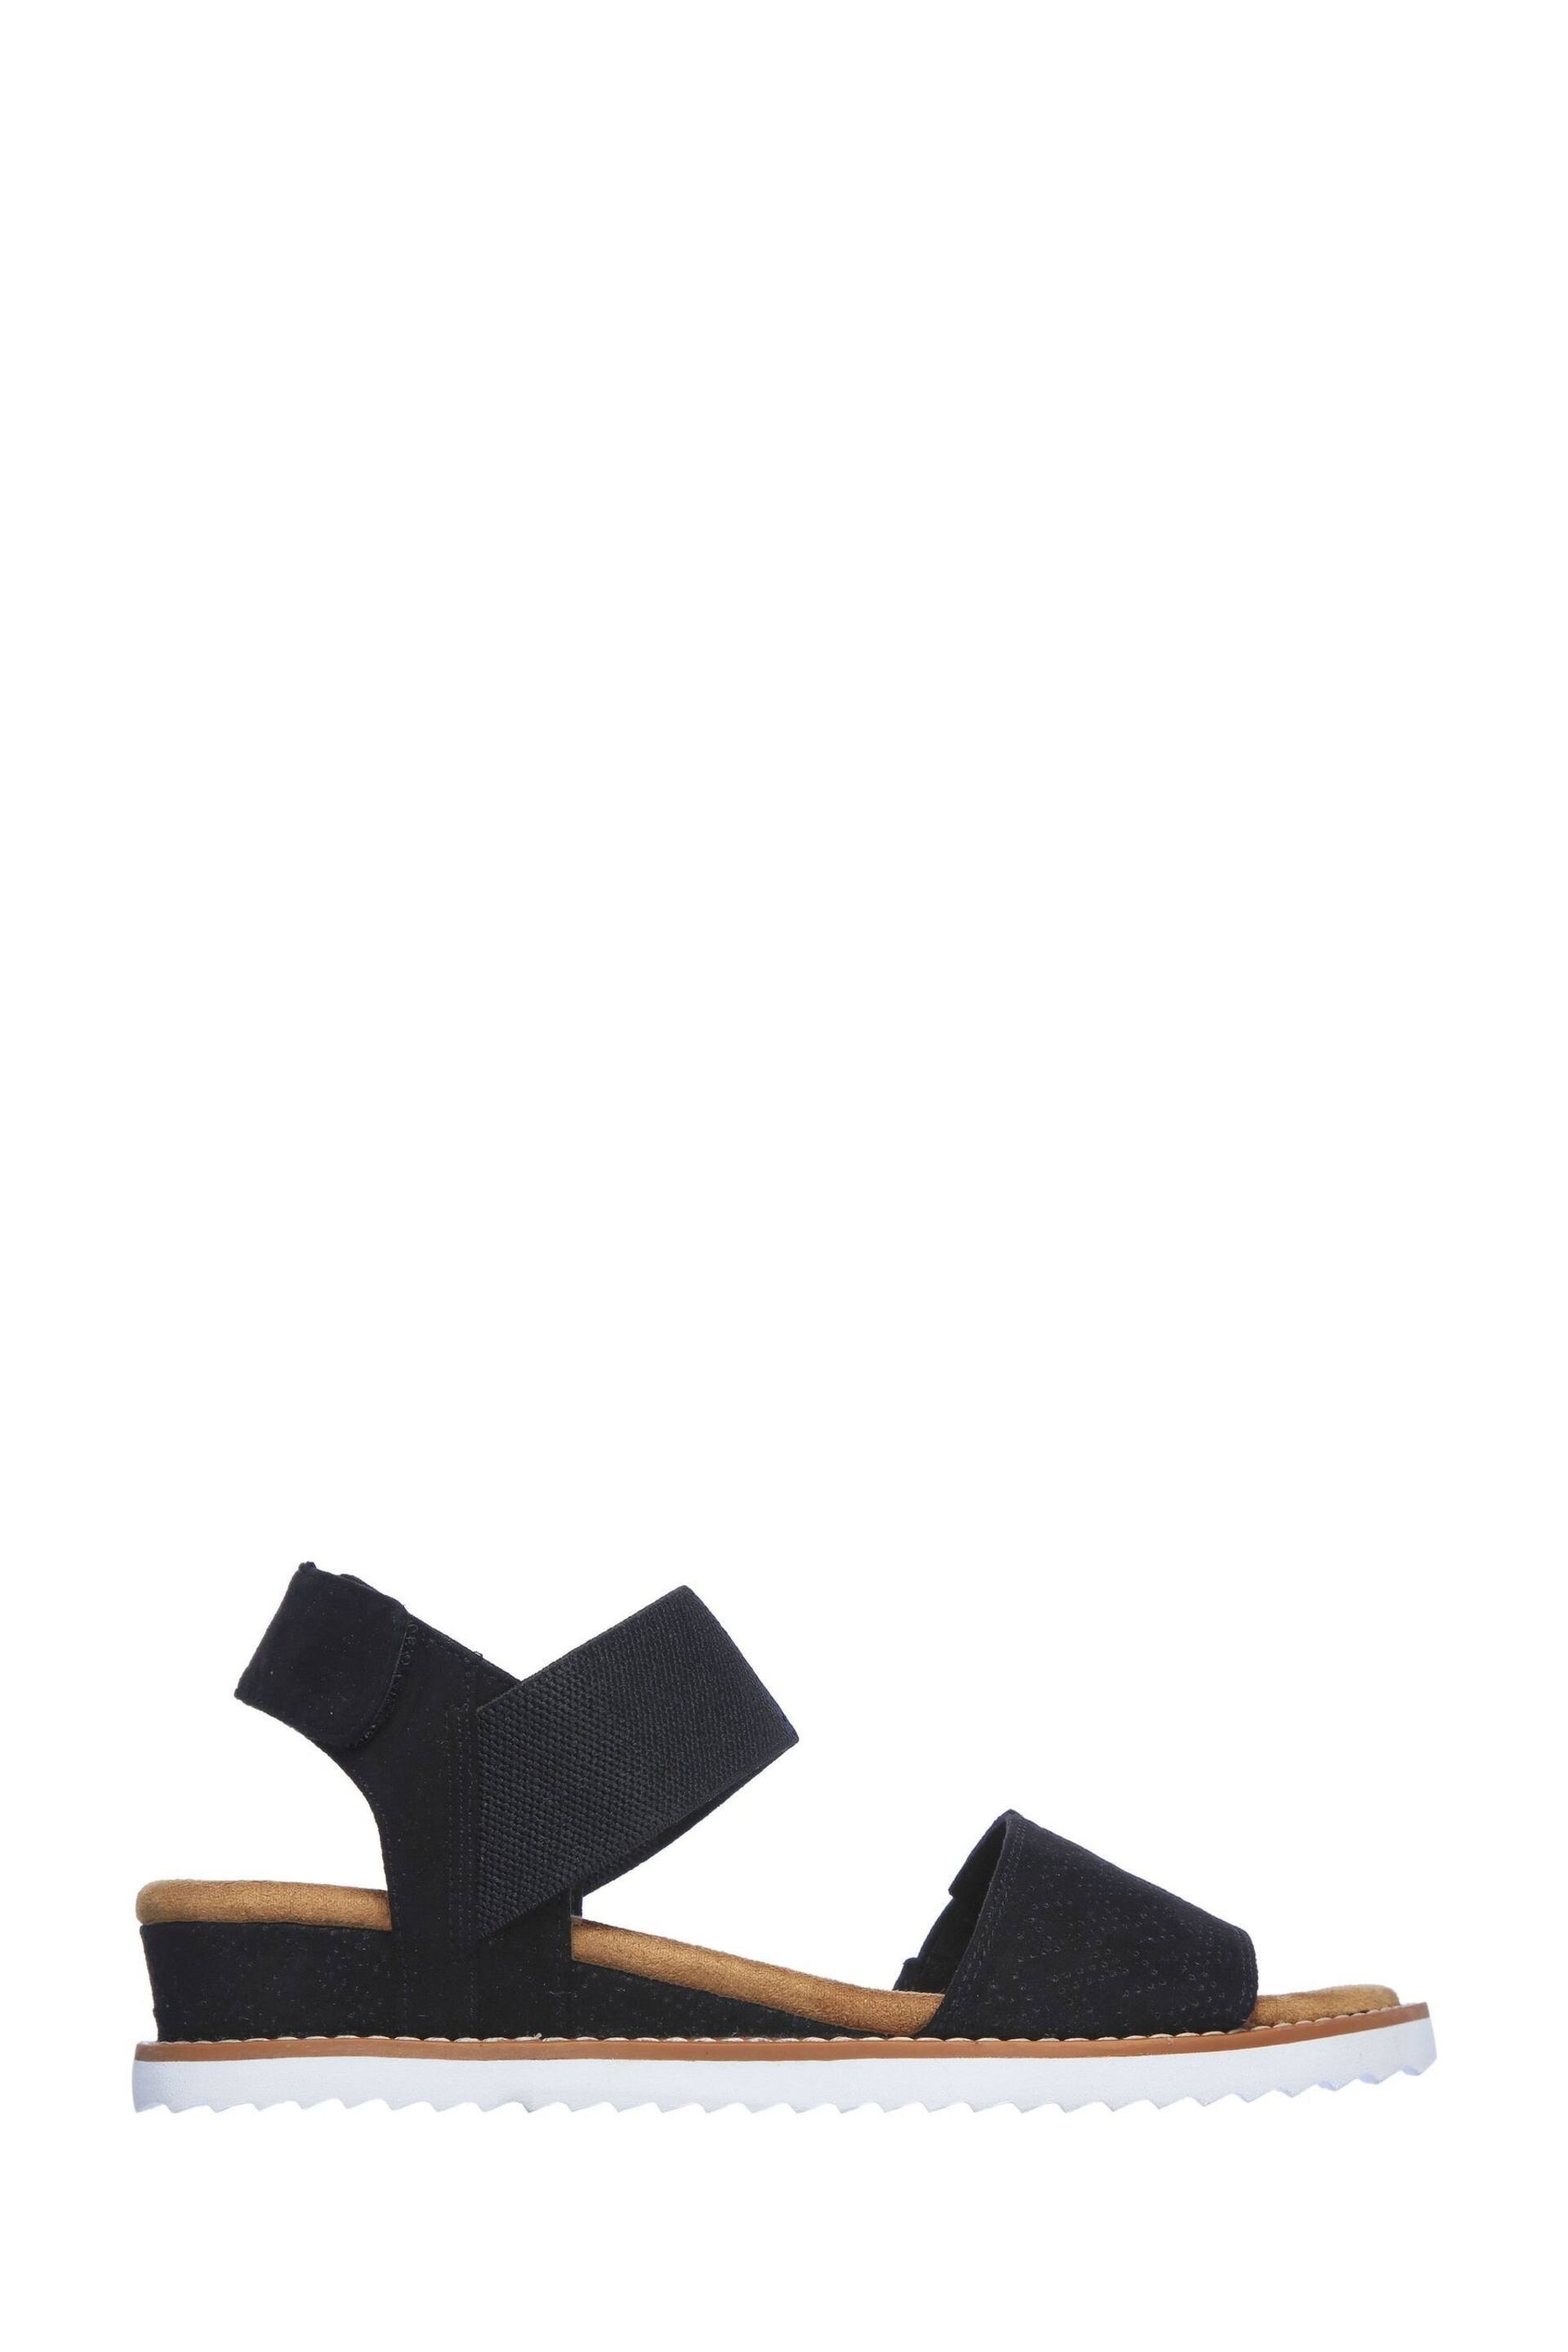 Skechers Black Desert Kiss Sandals - Image 1 of 5